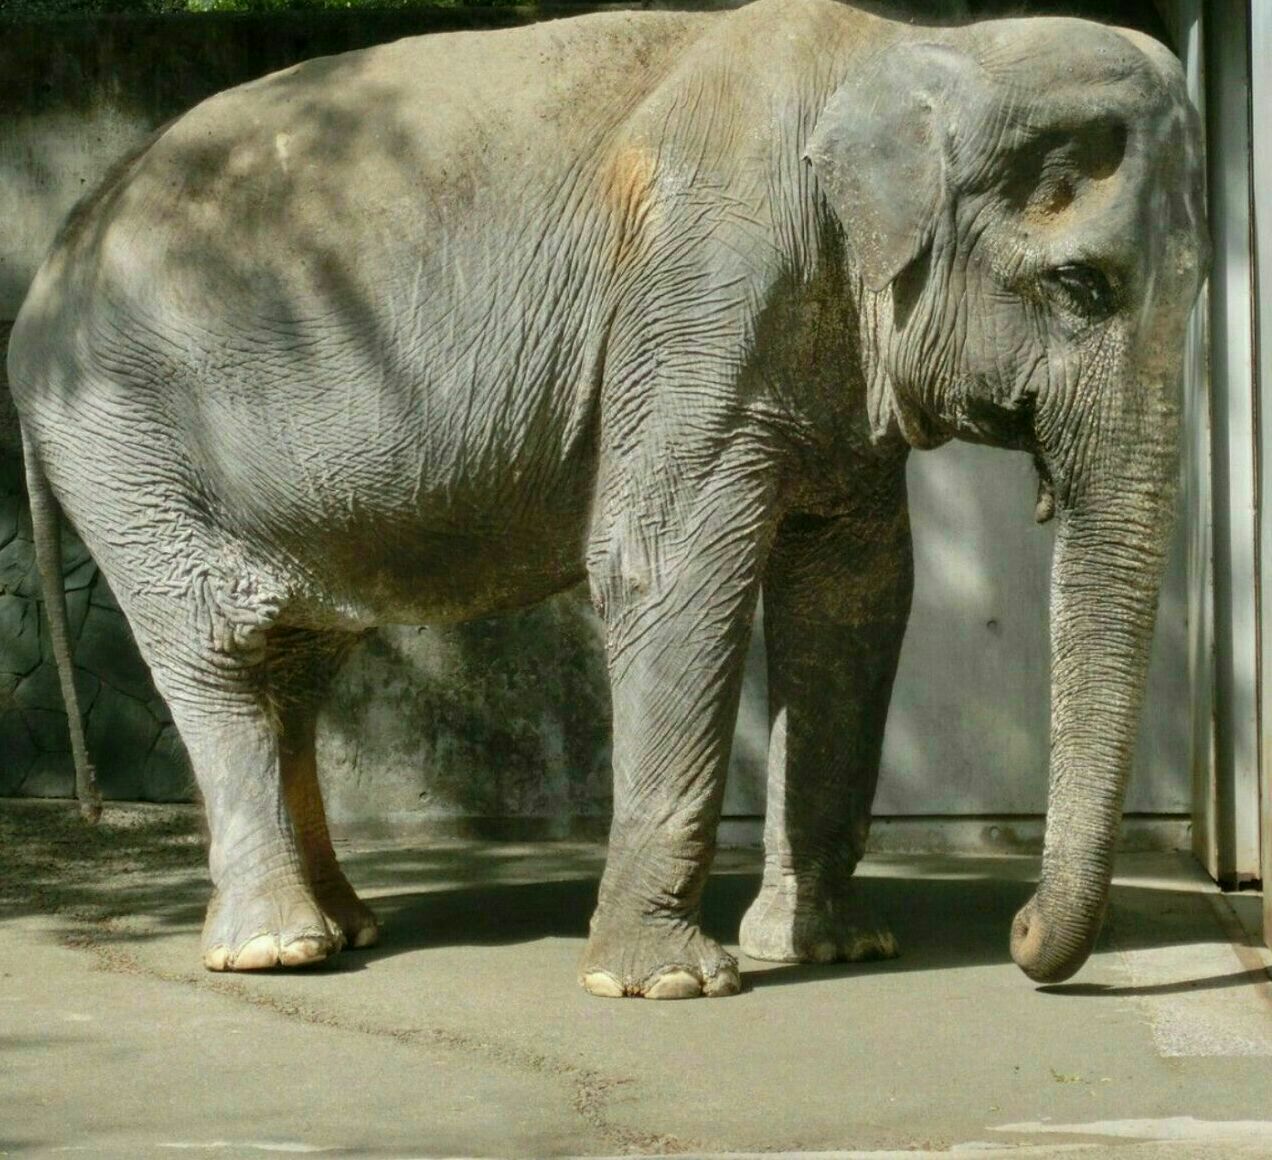 شدت ناراحتی این فیل بر اثر از دست دادن جفت خود + عکس - تلگرام آپ